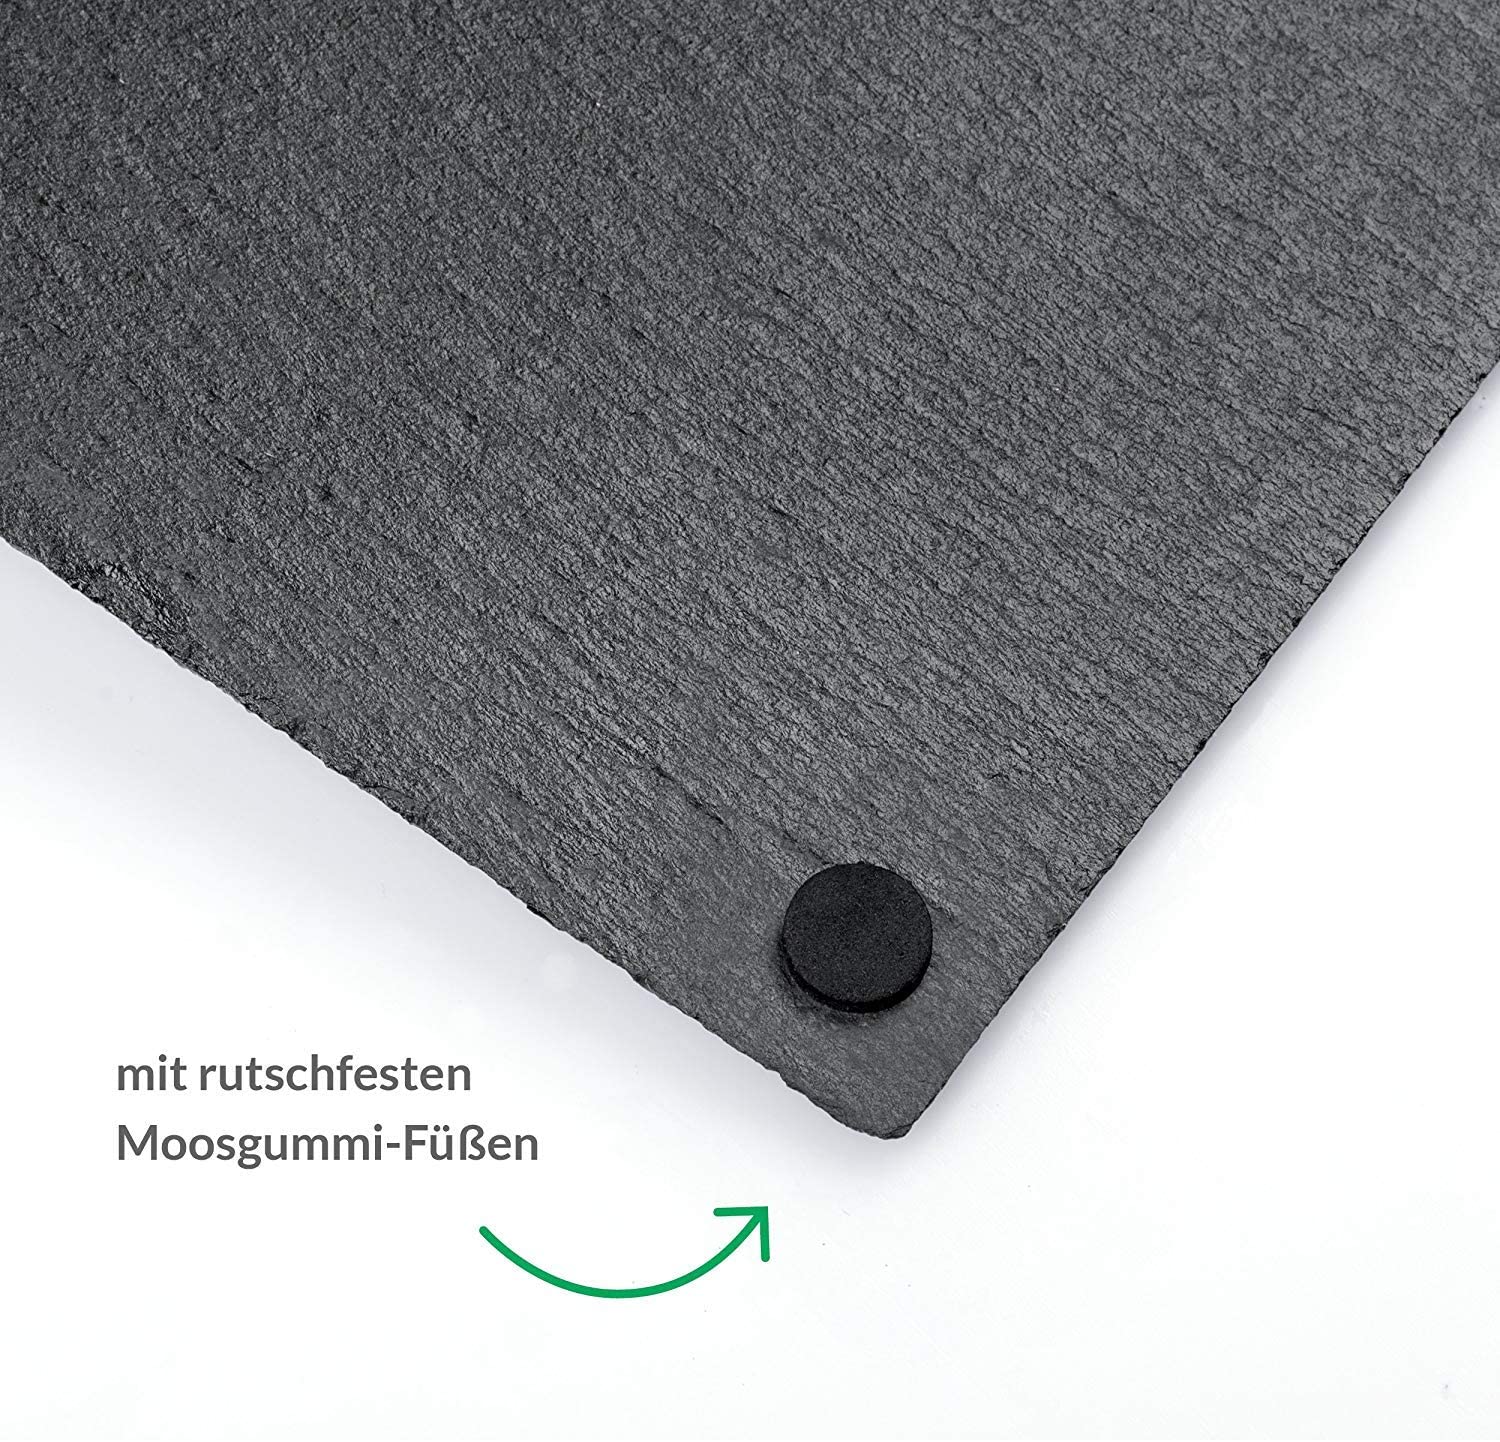 Schieferstein - Tafel Platte QUERKANT aus Schieferstein Natur belassen Größe 30cmx20cm + Kreidemarker